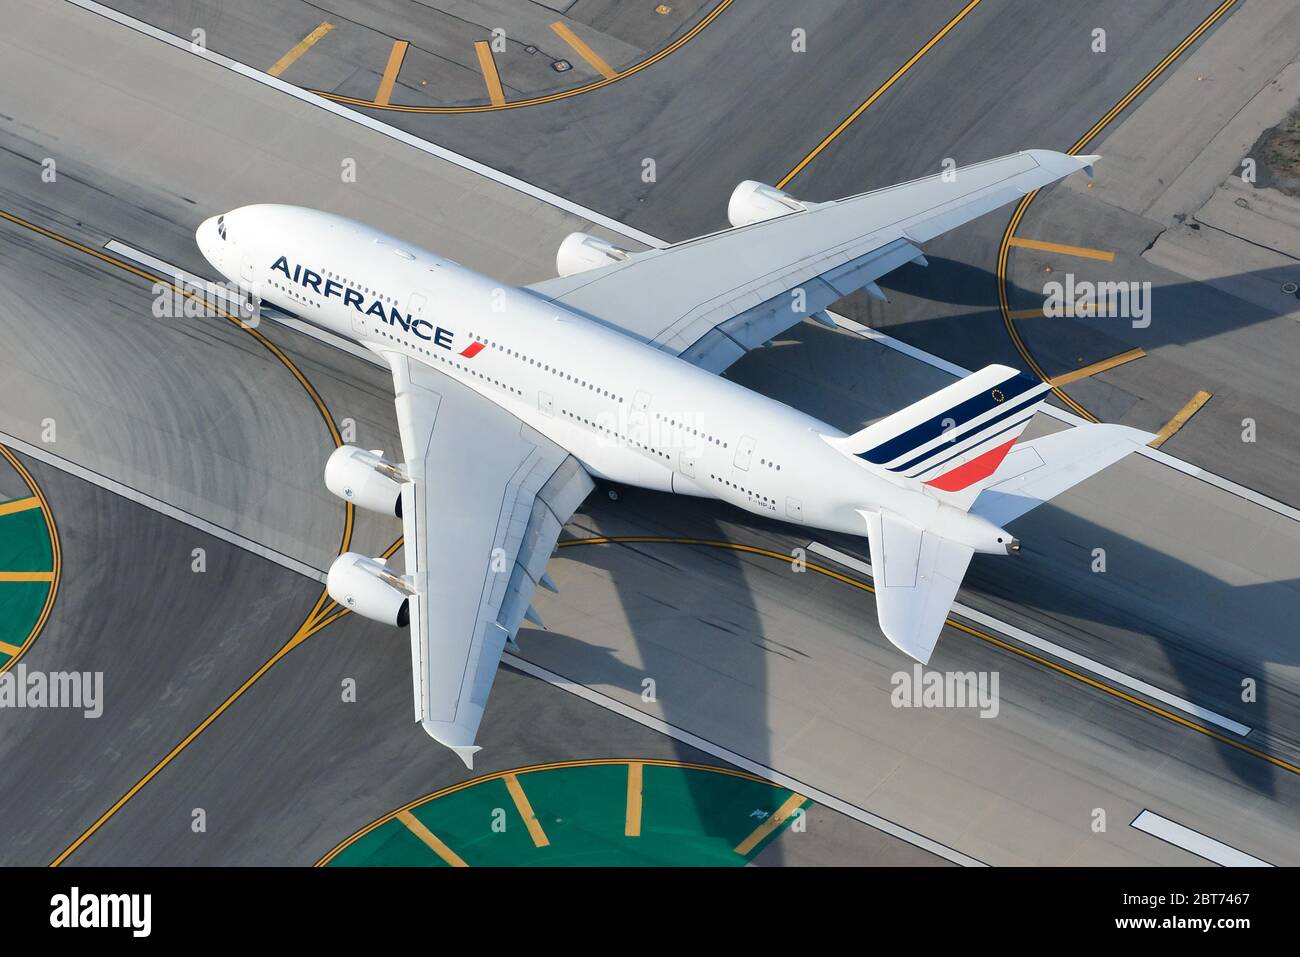 Air France Airbus A380 startet an einem internationalen Flughafen. Langstreckenflugzeug F-HPJA. Air France hat aufgrund einer Krise Flugzeuge eingestellt. Stockfoto